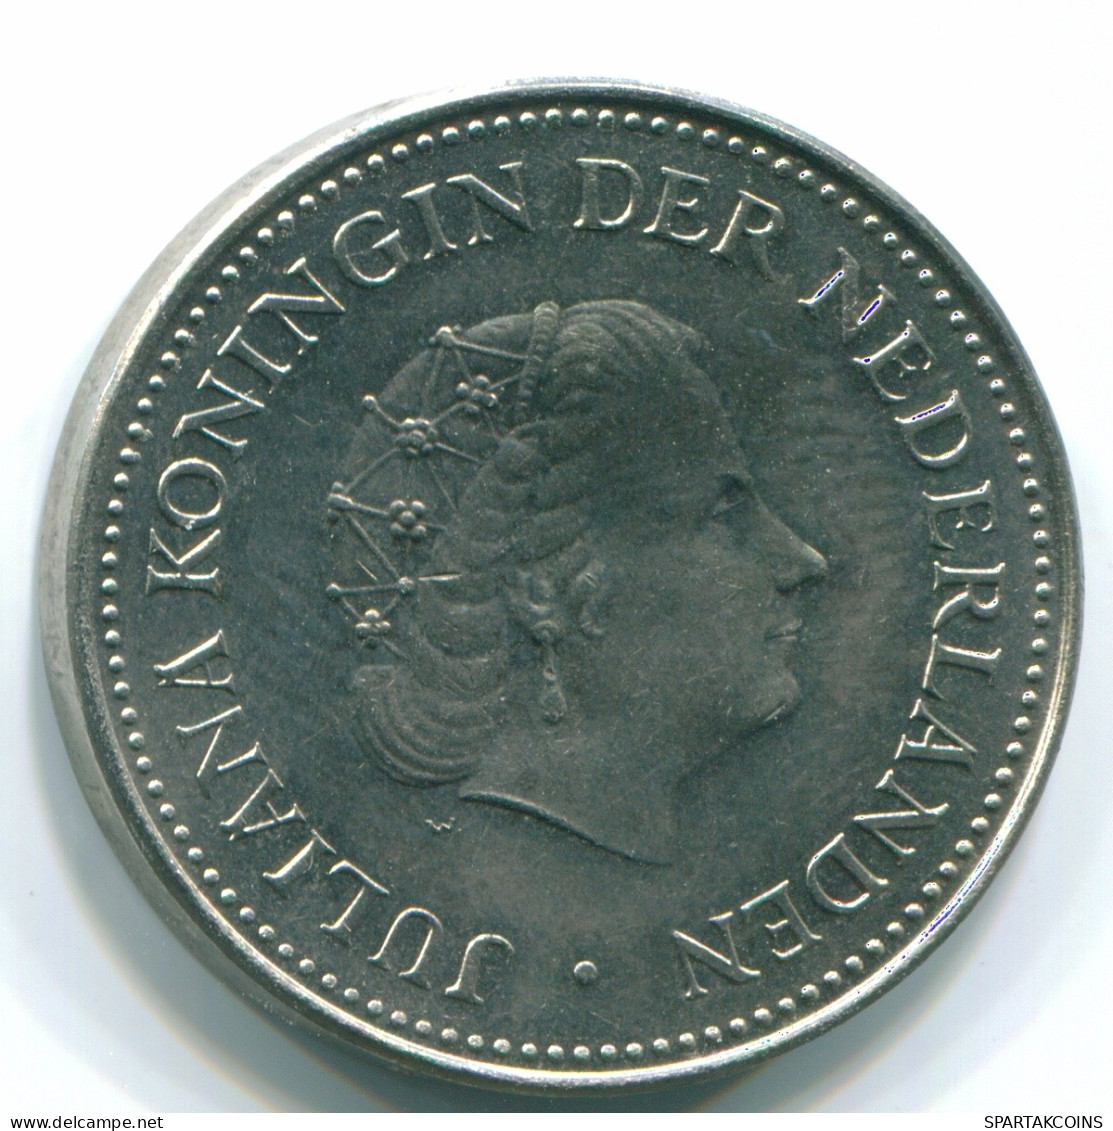 1 GULDEN 1971 ANTILLAS NEERLANDESAS Nickel Colonial Moneda #S11966.E.A - Nederlandse Antillen